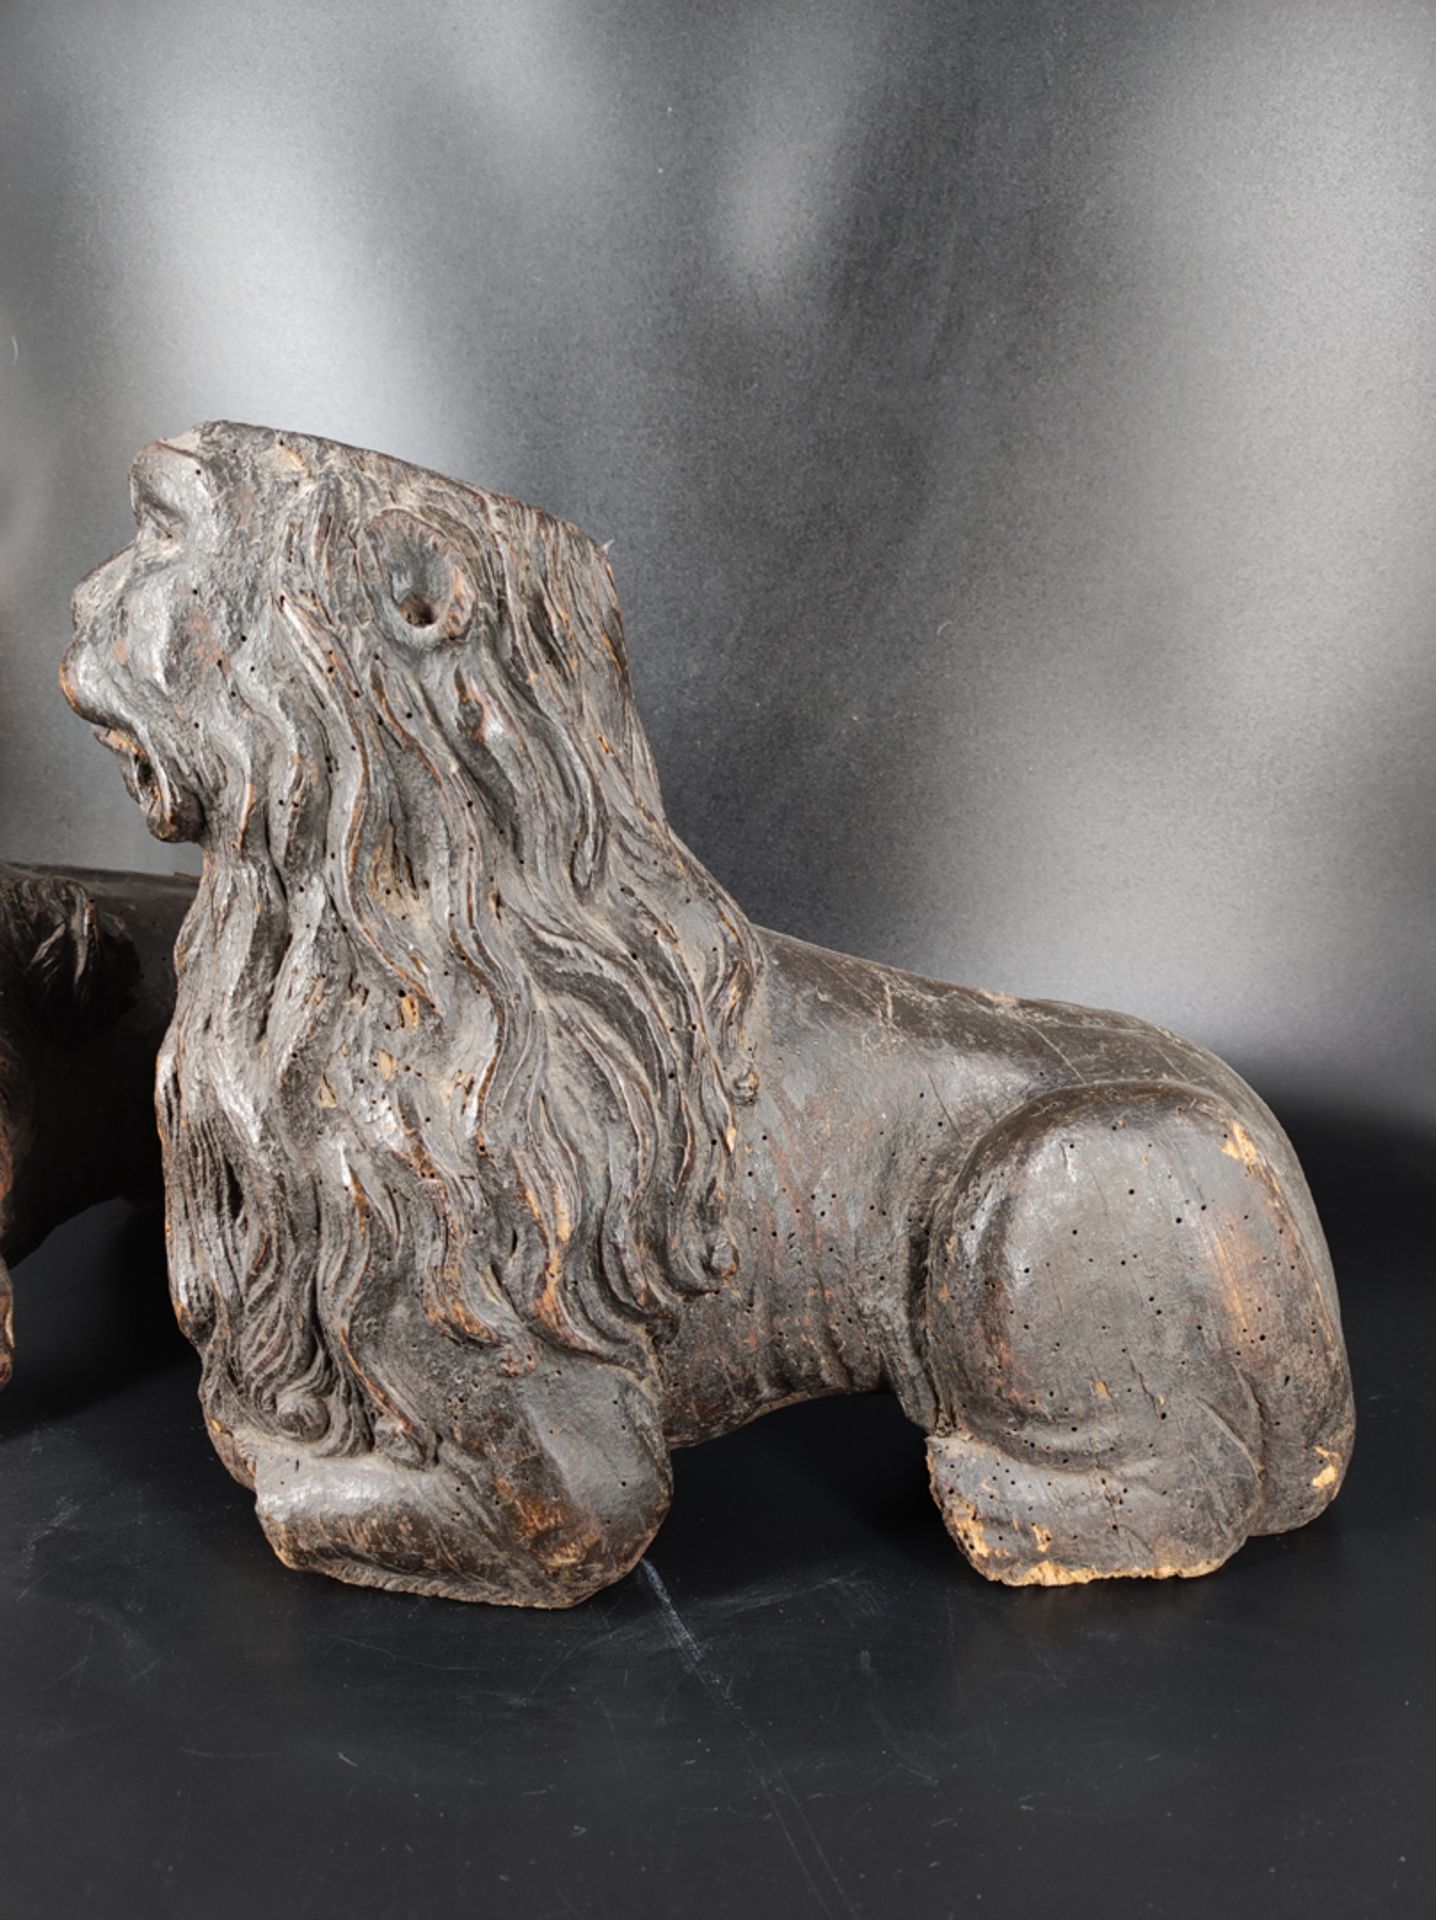 2 Uralt-Löwen, Holz, geschnitzt, als Sockel oder Fuß, 17. Jh., L 35 cm, Alterungsspuren - Bild 2 aus 2